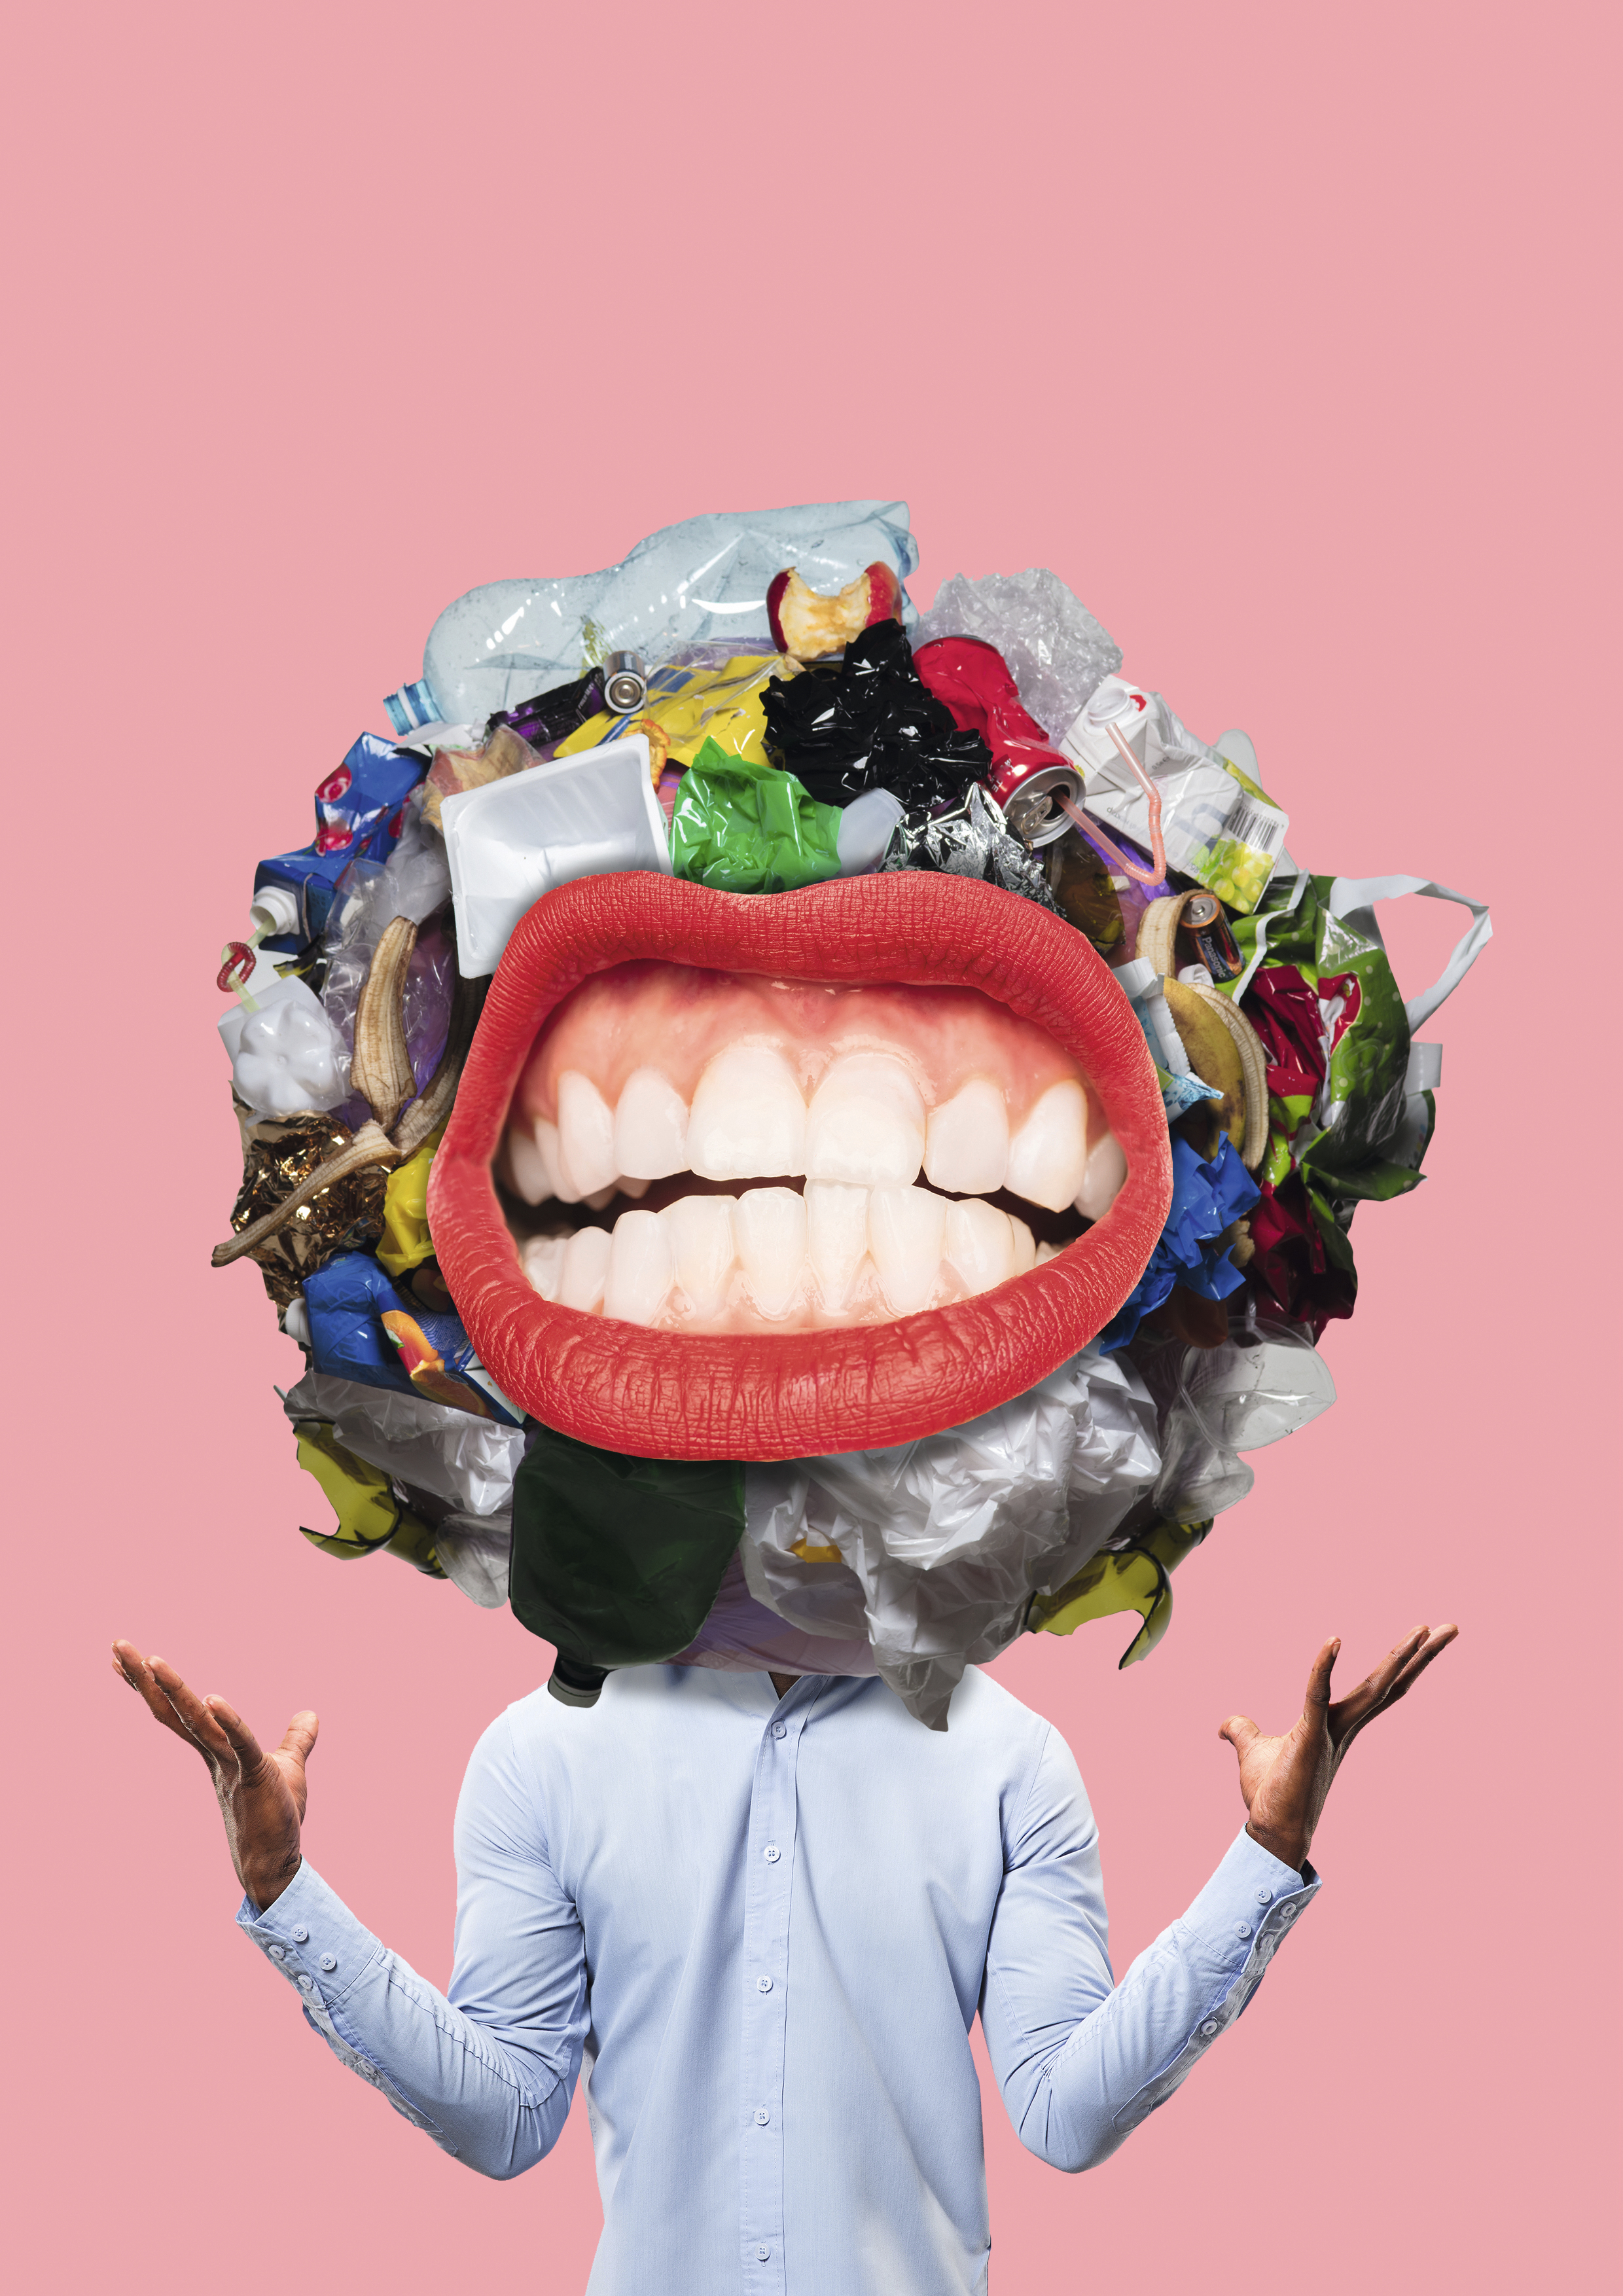 Théorie de la poubelle : en management, les mauvaises idées ne sont pas toutes à jeter